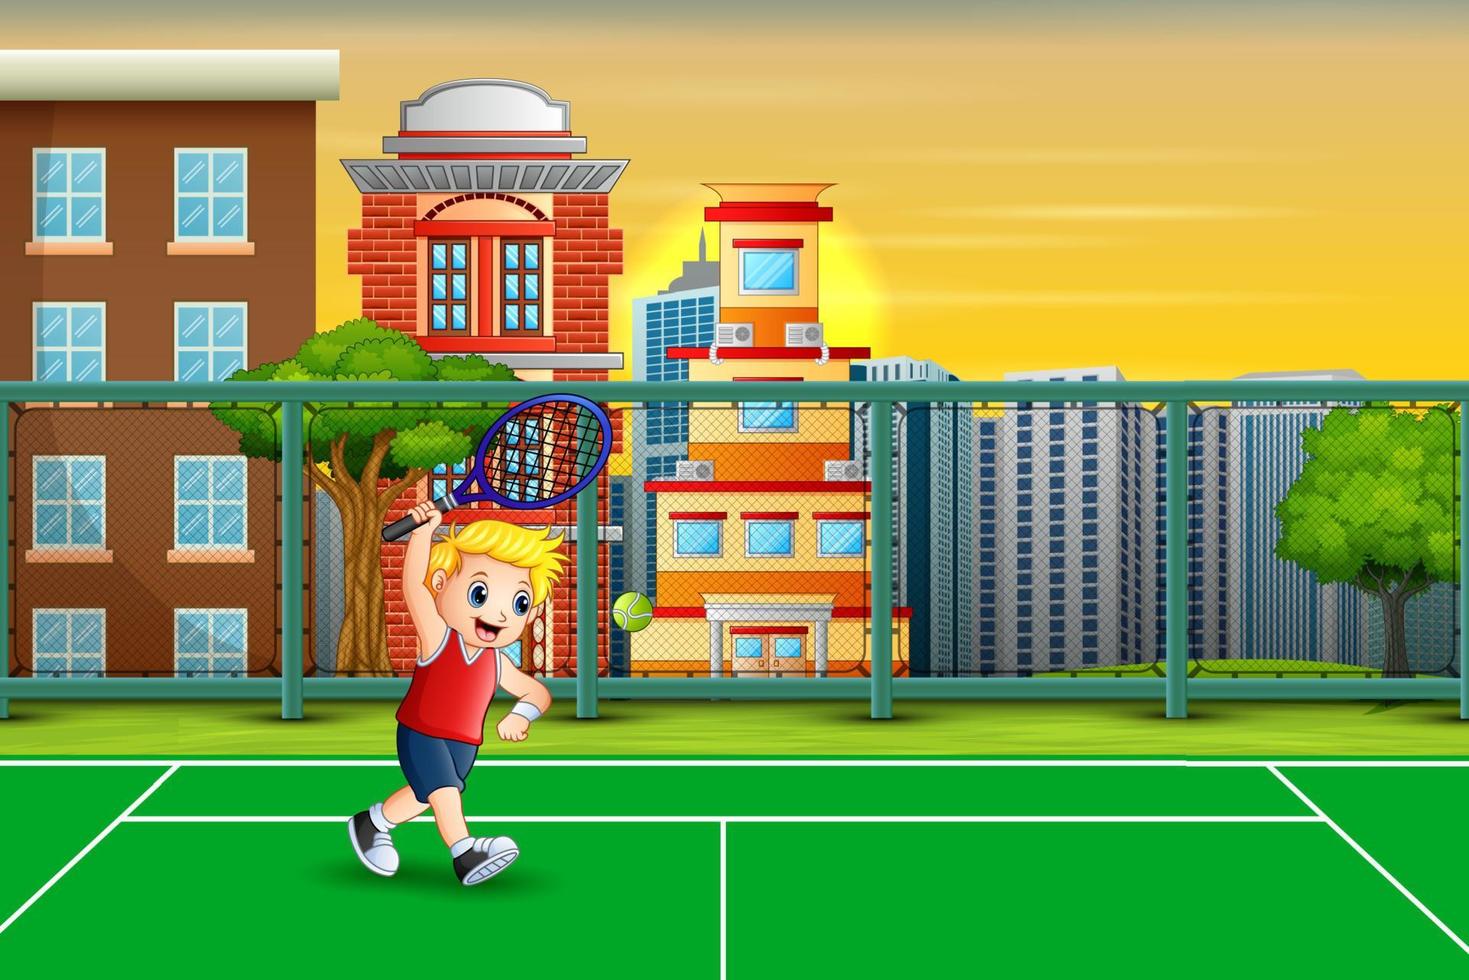 Cartoon ein Junge spielt Tennis auf dem Platz vektor